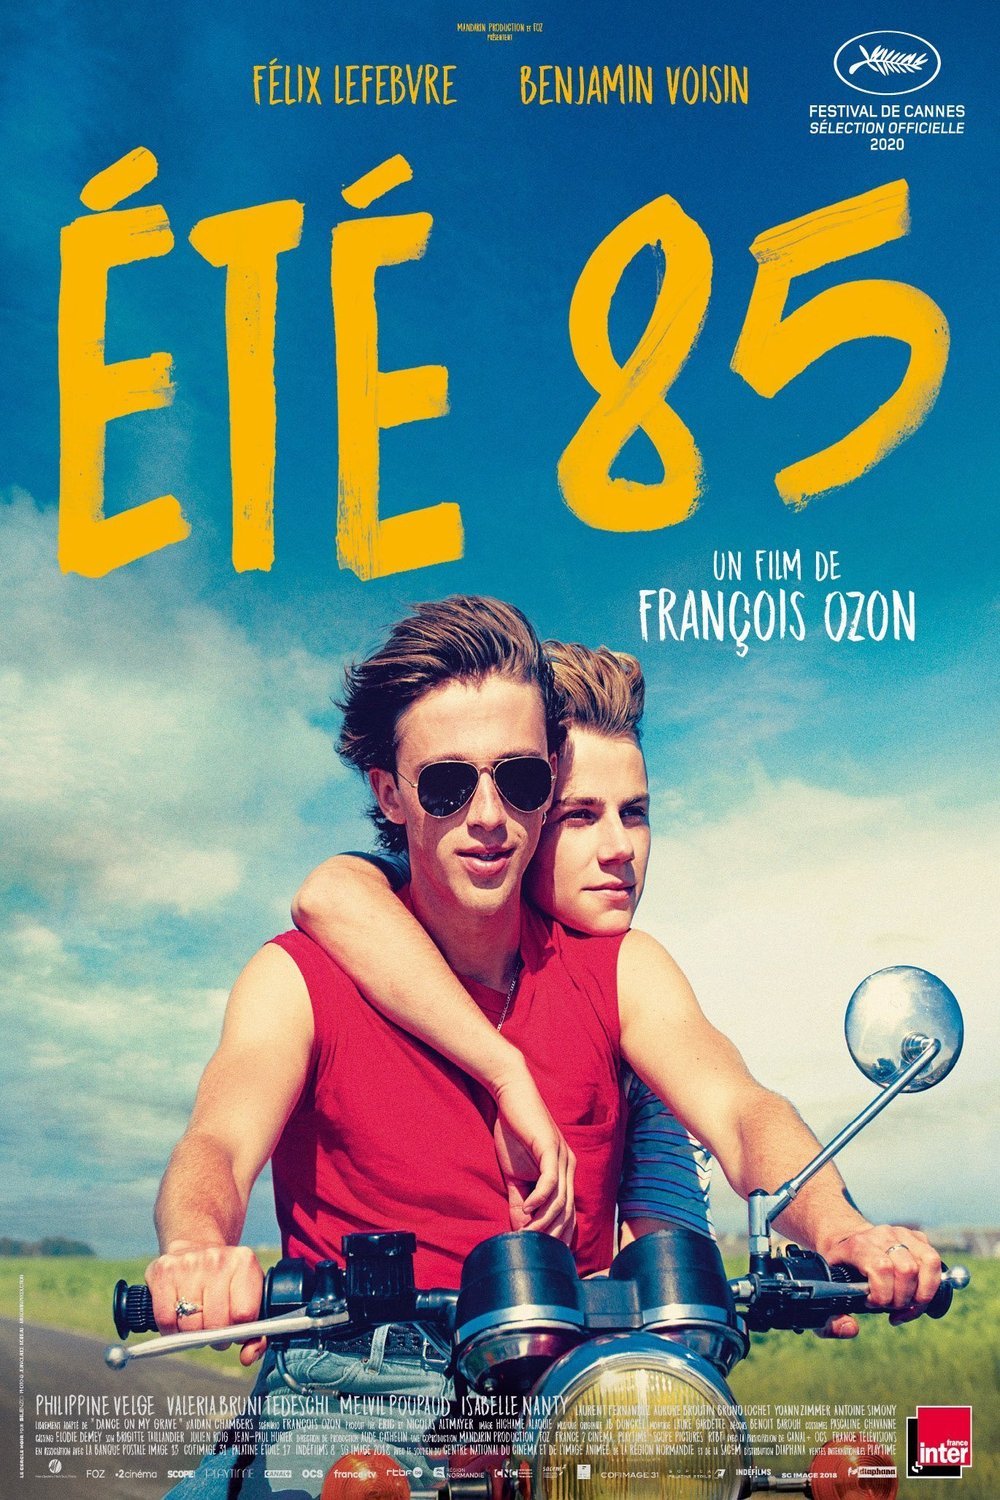 Poster of the movie Été 85